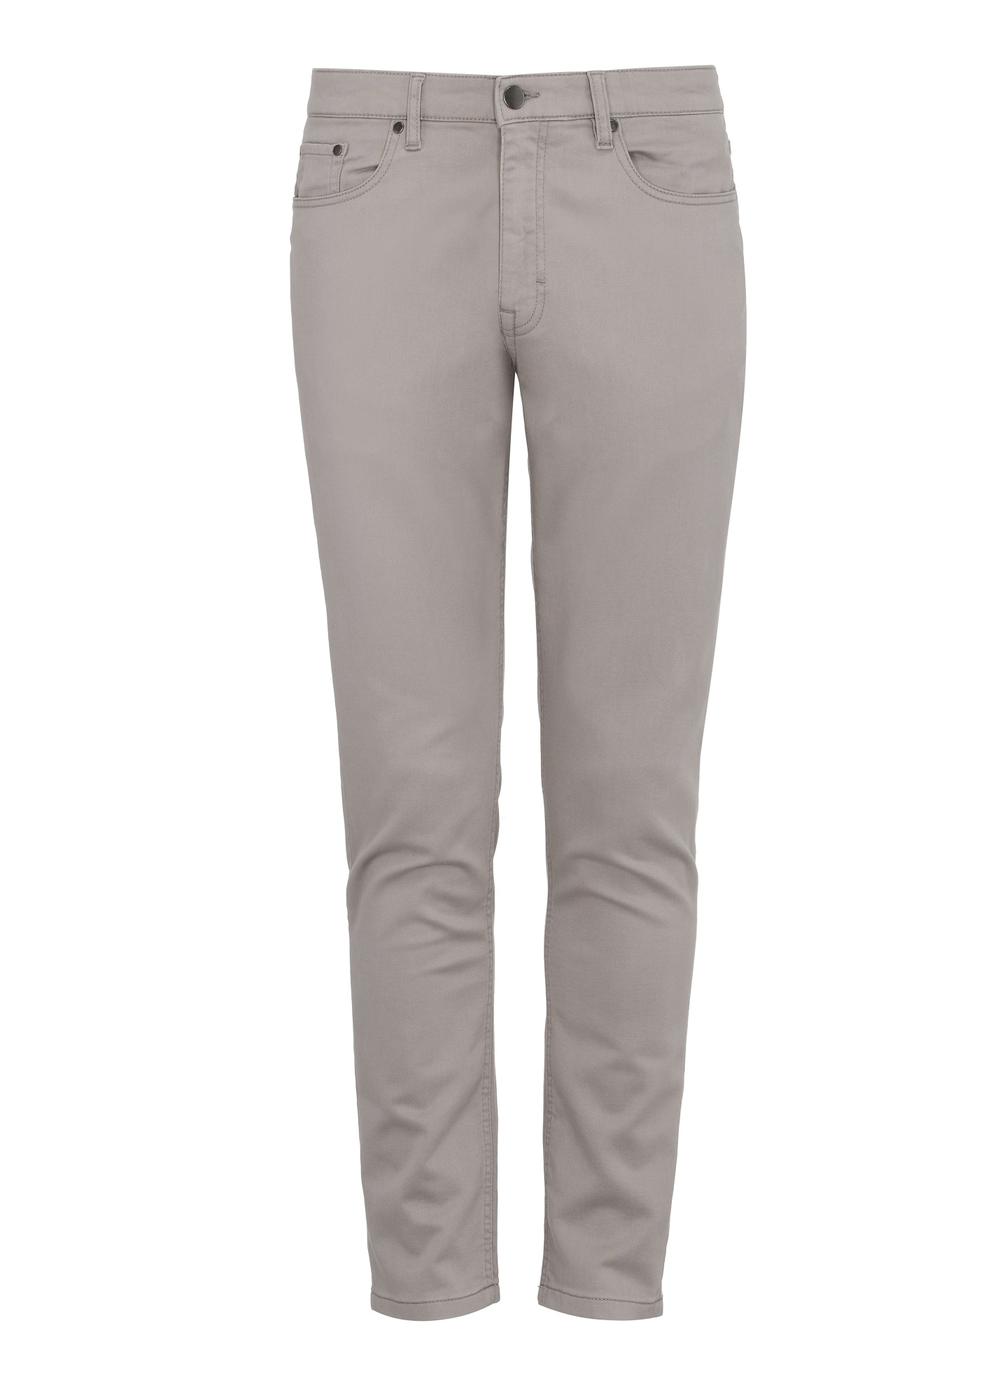 Beżowe spodnie męskie SPOMT-0096-81(W24)